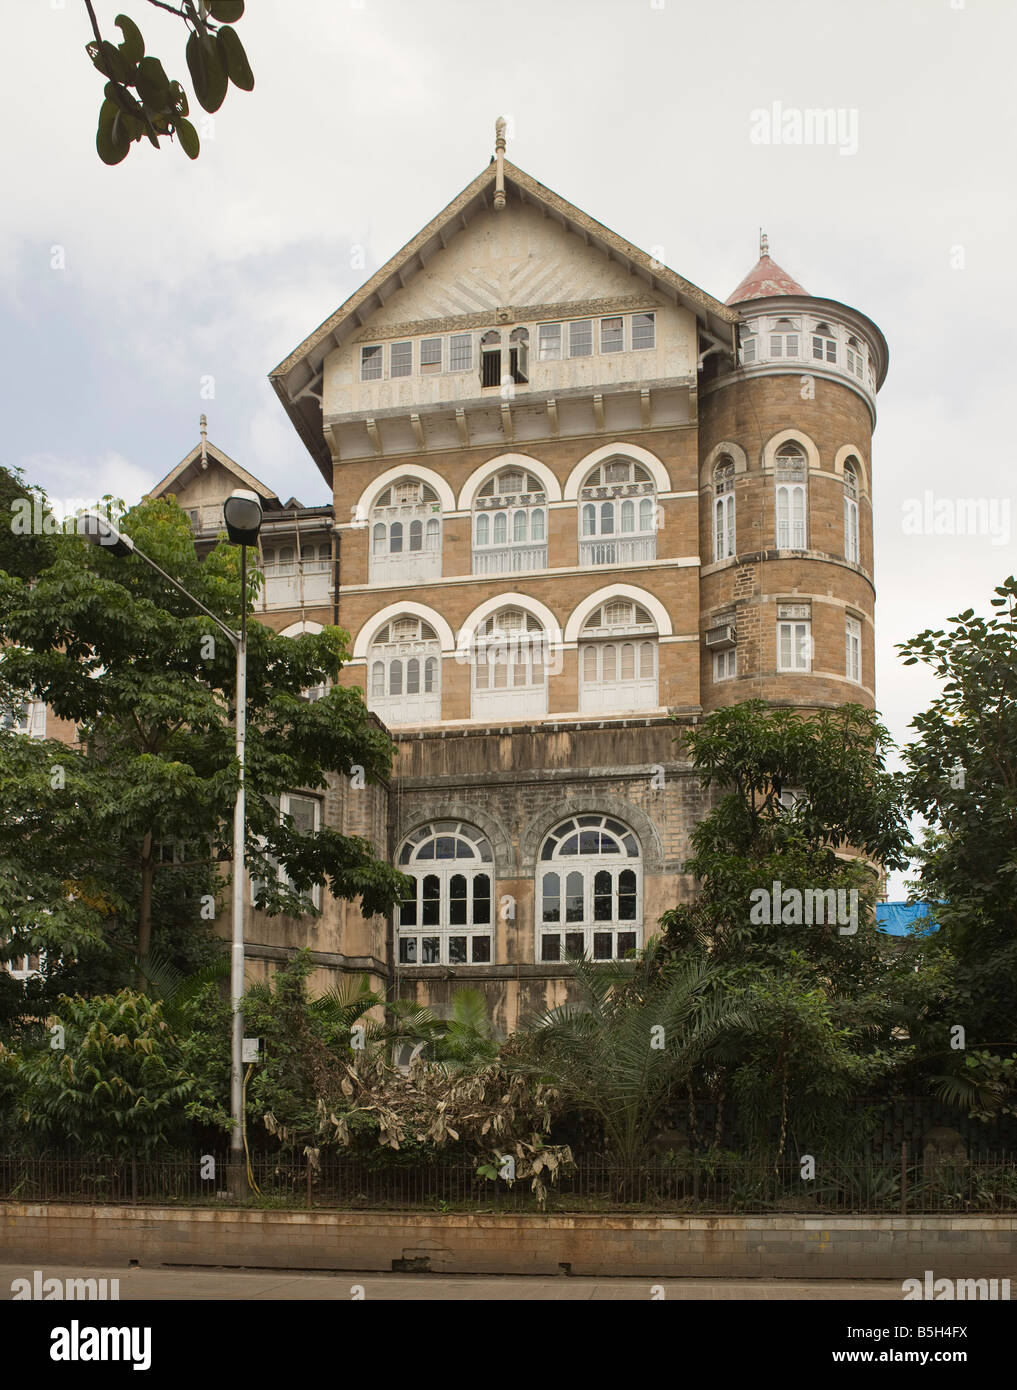 Bombay Royal Yacht Club construit en 1898 en style gothique pour les navigants du Raj britannique. Banque D'Images